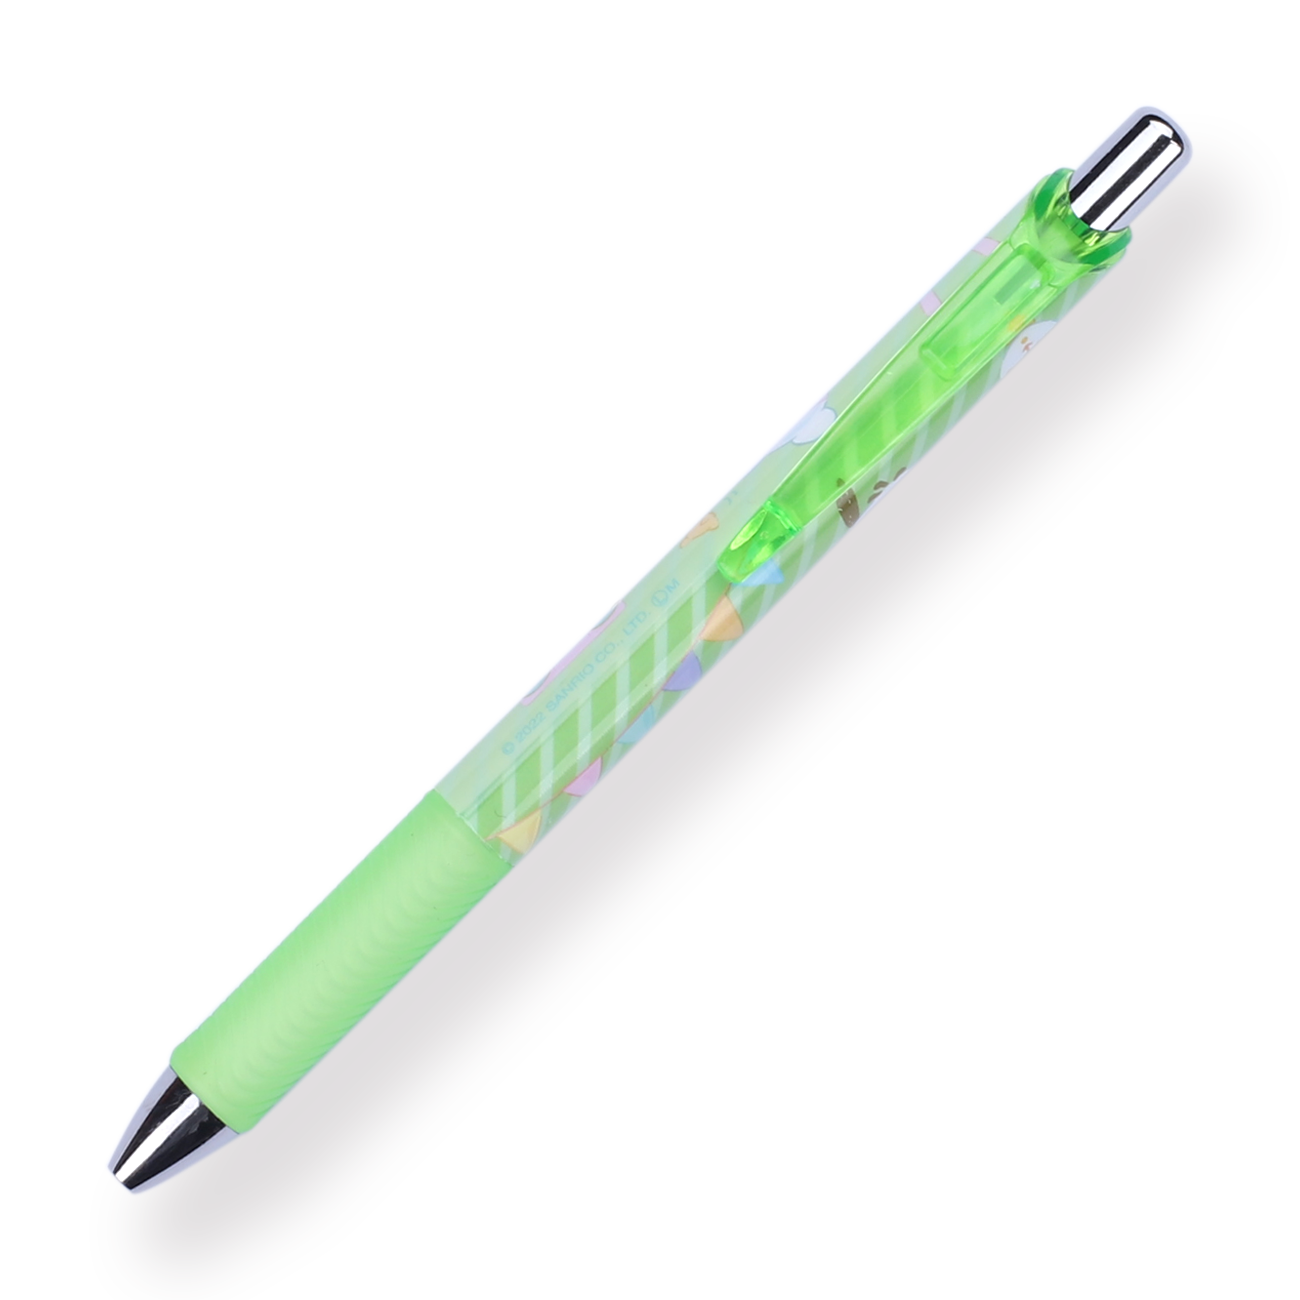 Anirollz Character Gel Pen Set